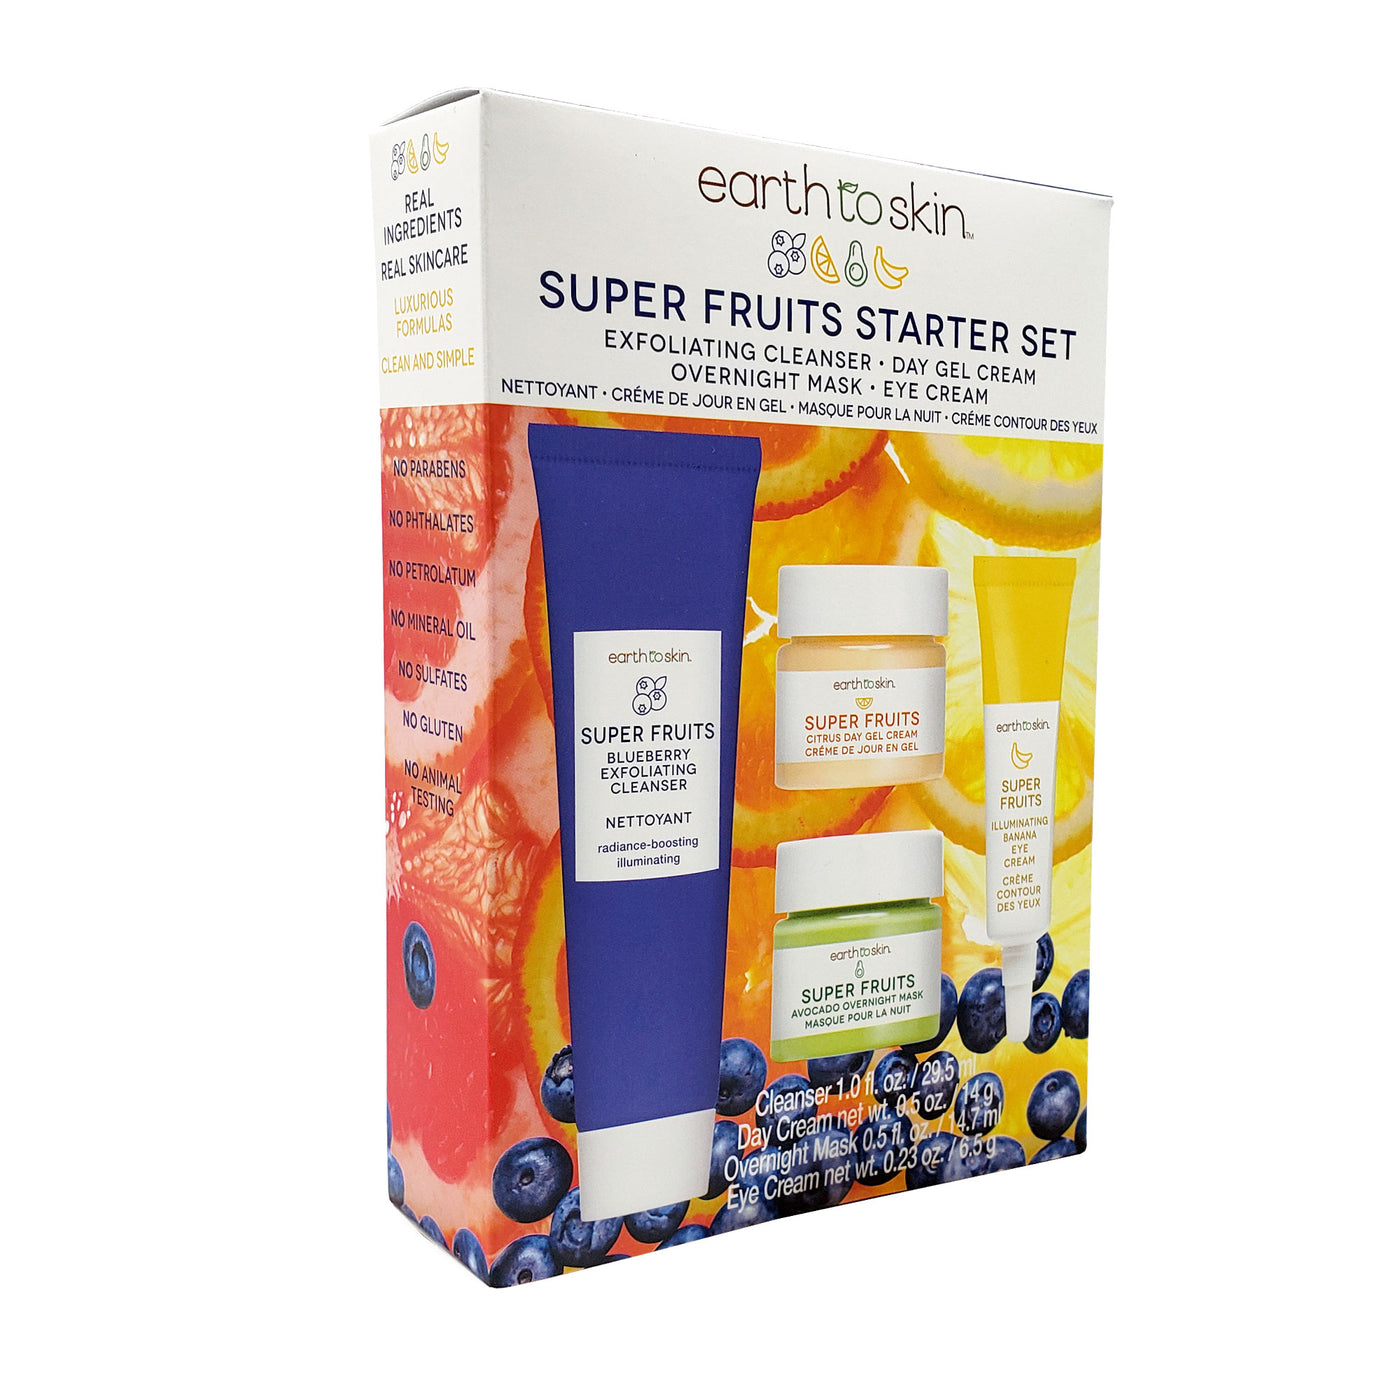 Super Fruits Starter Skincare Set